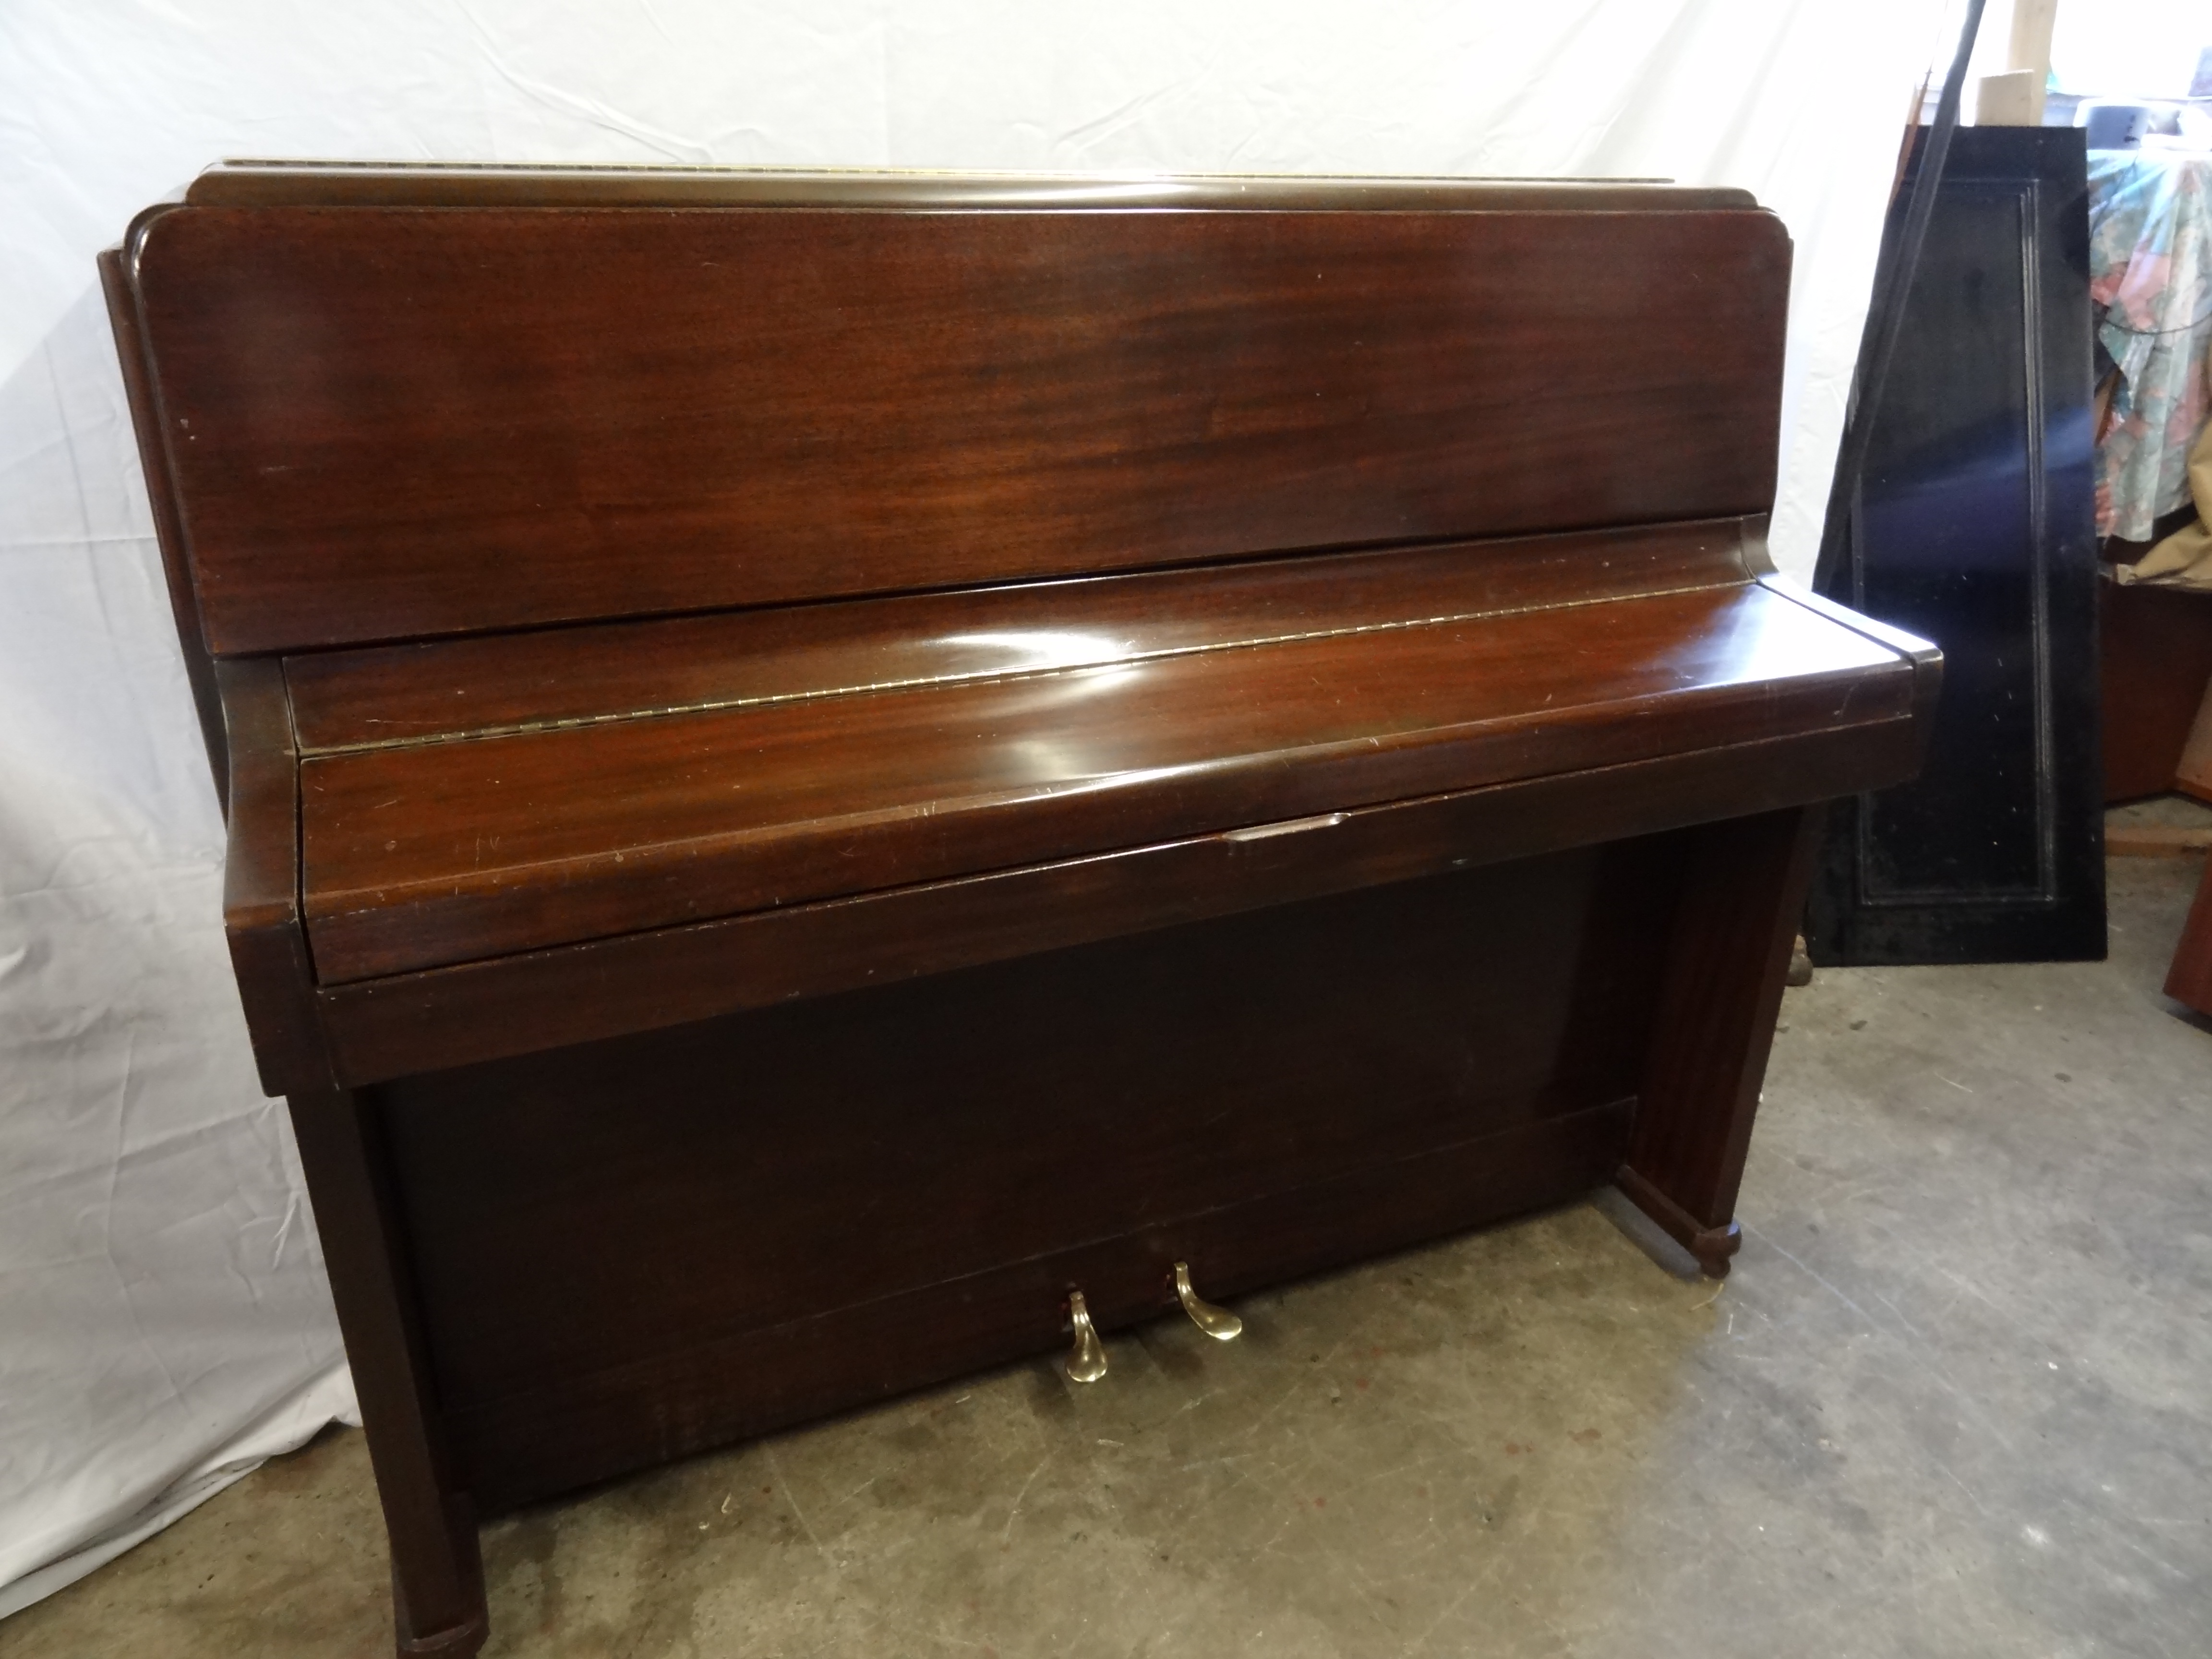 Knight Upright Piano in Mahogany Case 5